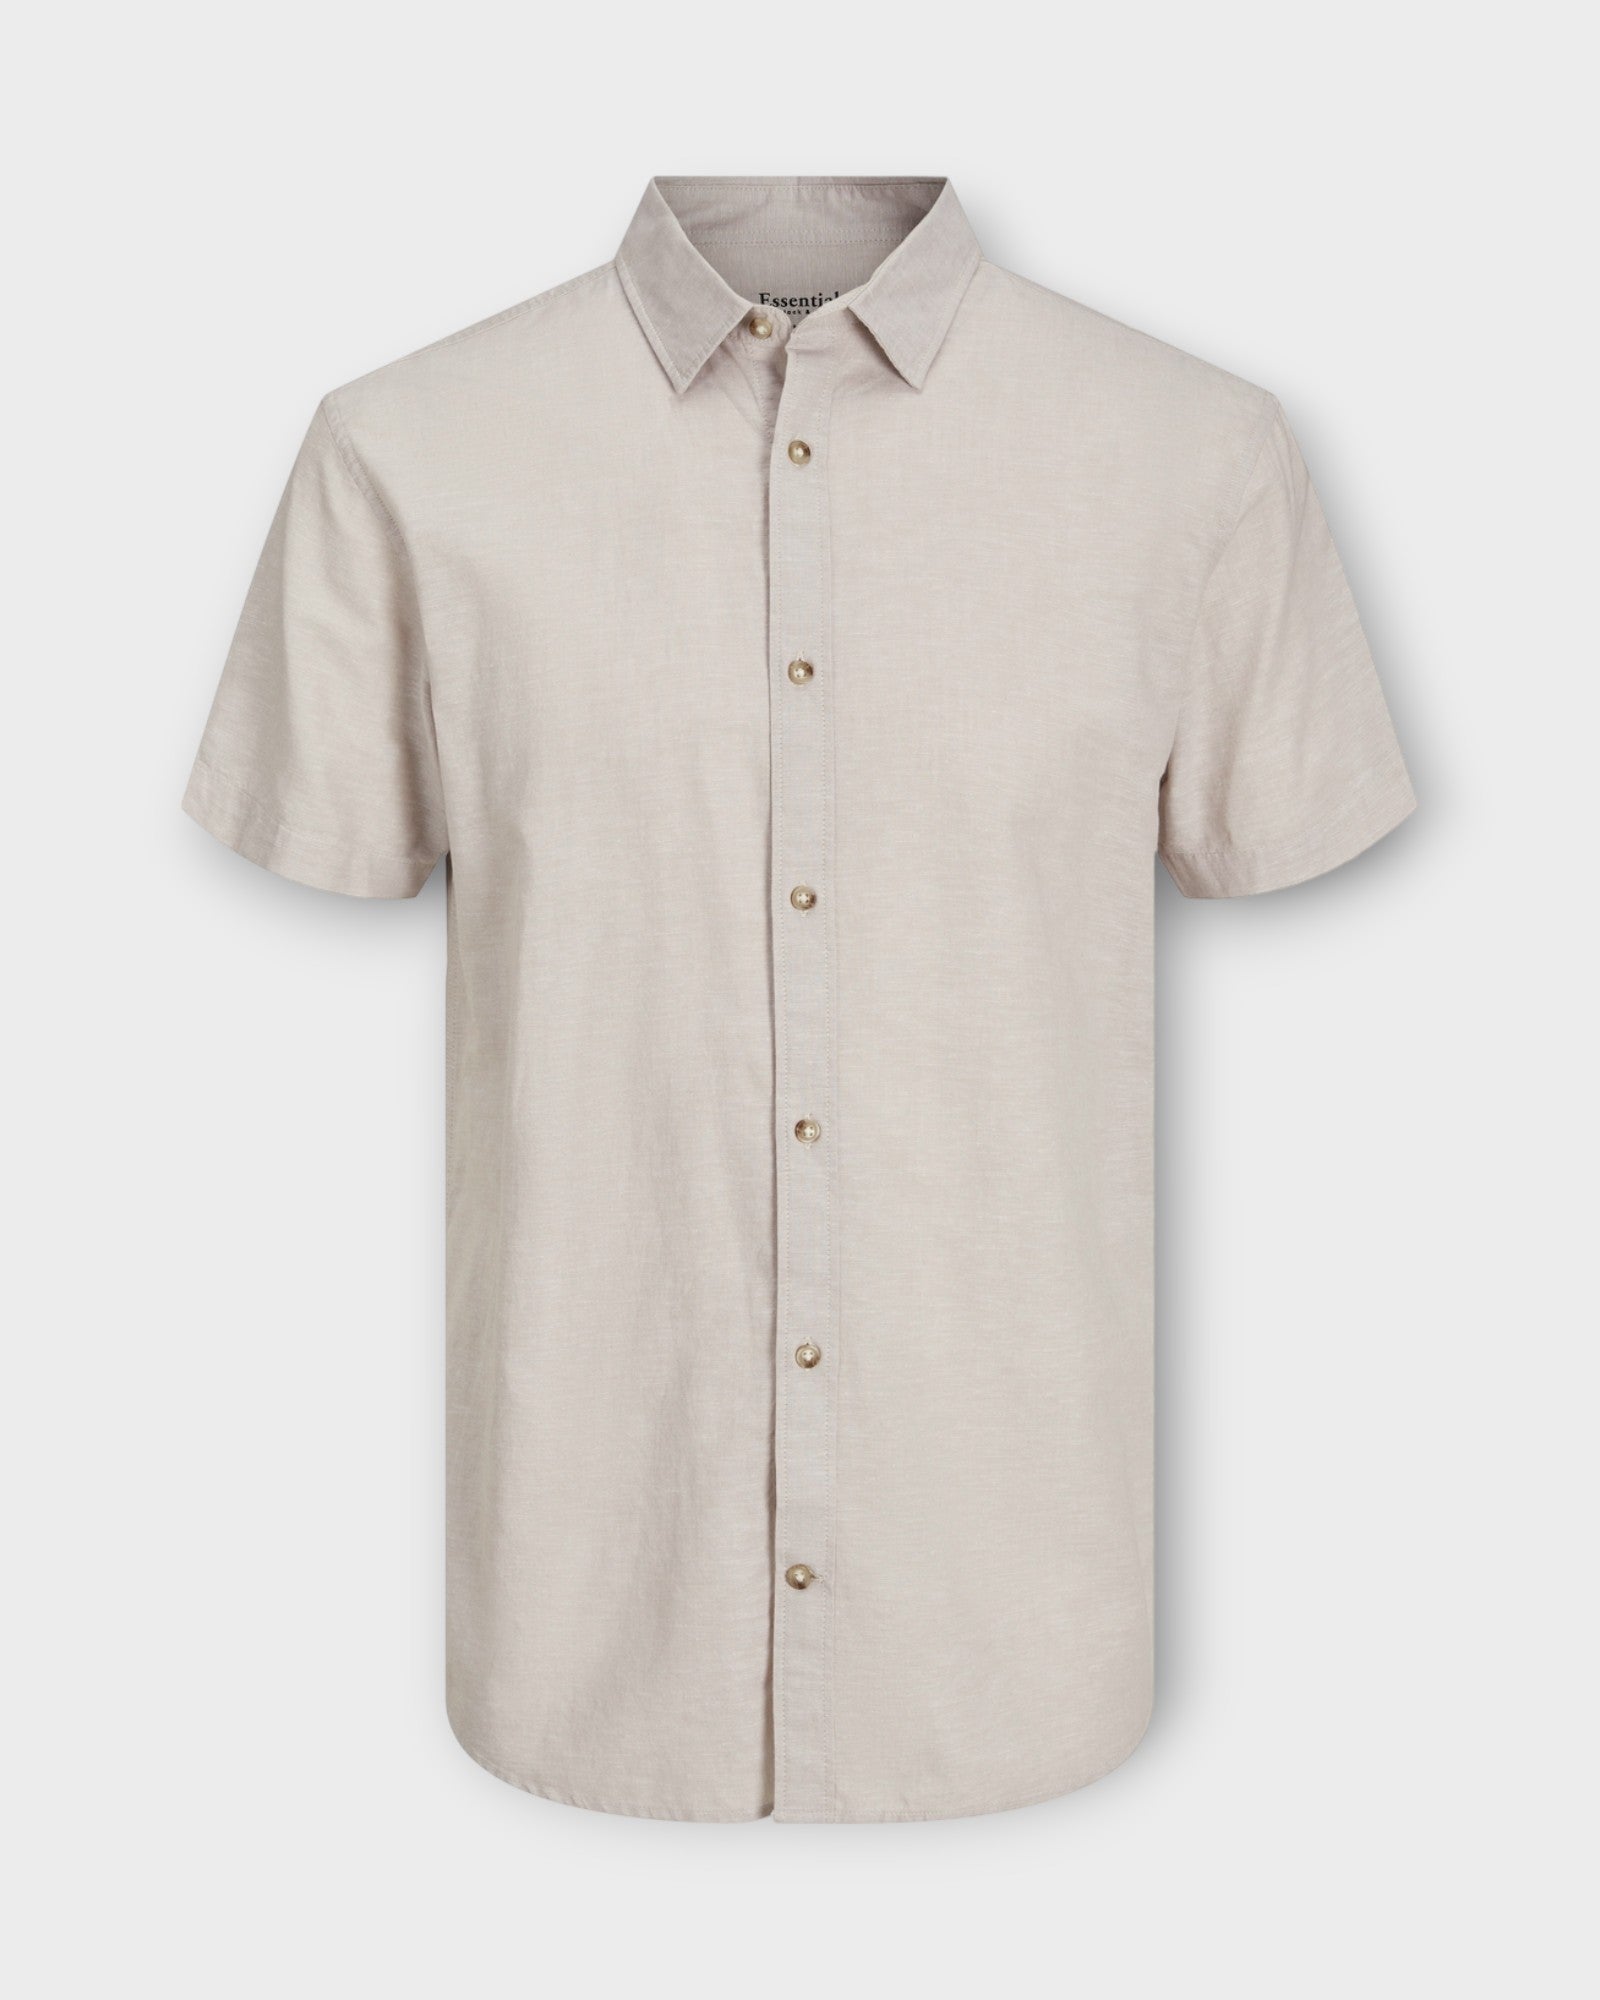 Summer Linen Shirt Crockery fra Jack and Jones. Kortærmet sandfarvet hørskjorte til mænd. Her set forfra.